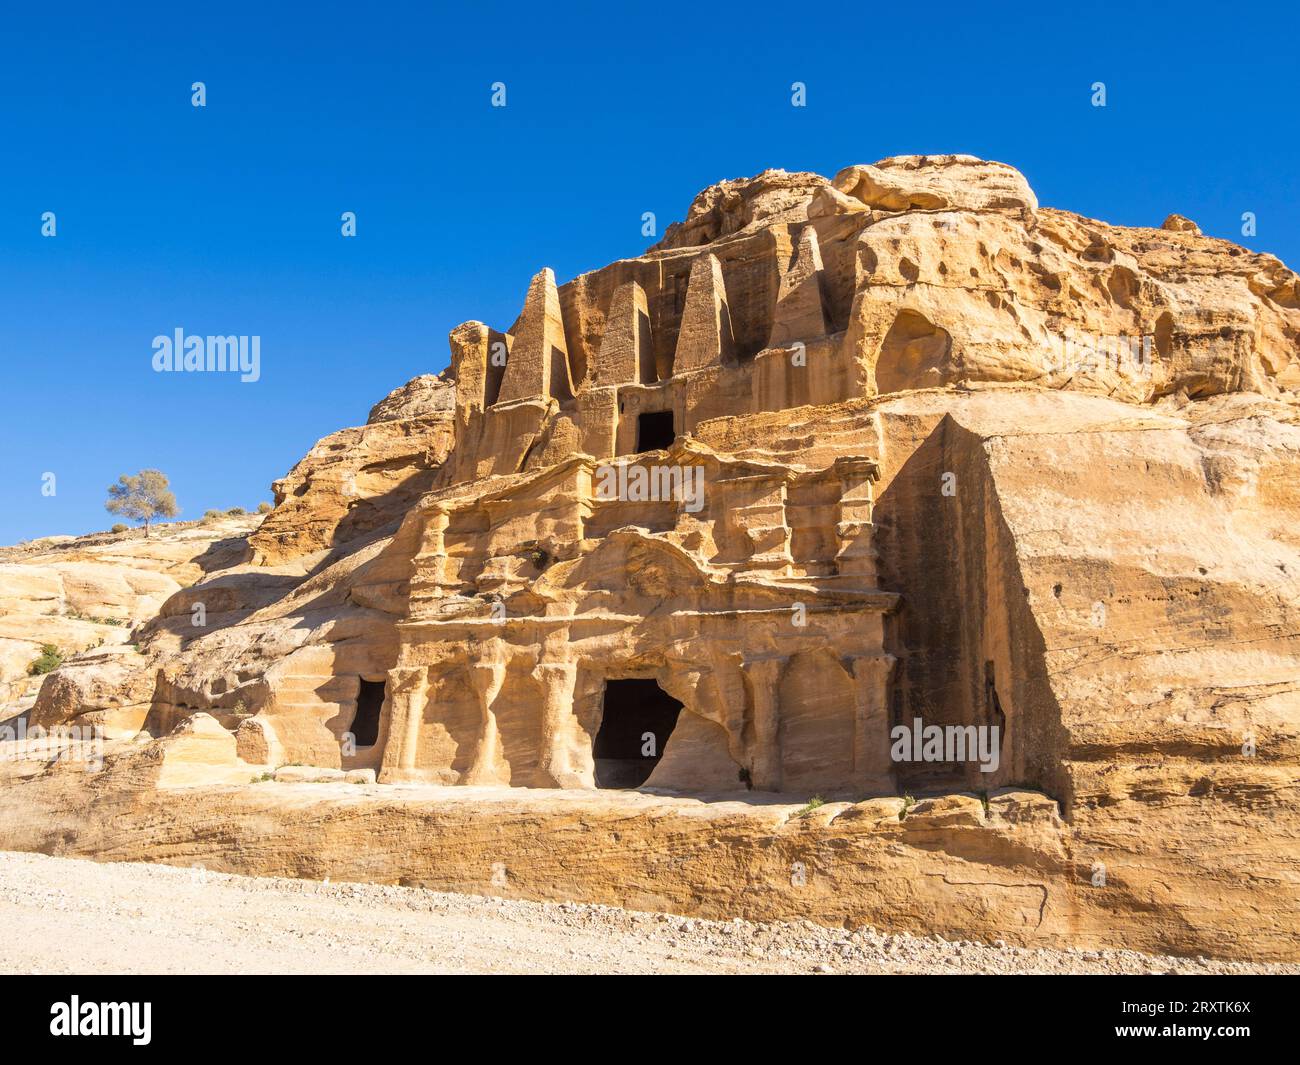 La tomba dell'Obelisco, il parco archeologico di Petra, patrimonio dell'umanità dell'UNESCO, una delle nuove sette meraviglie del mondo, Petra, Giordania, Medio Oriente Foto Stock